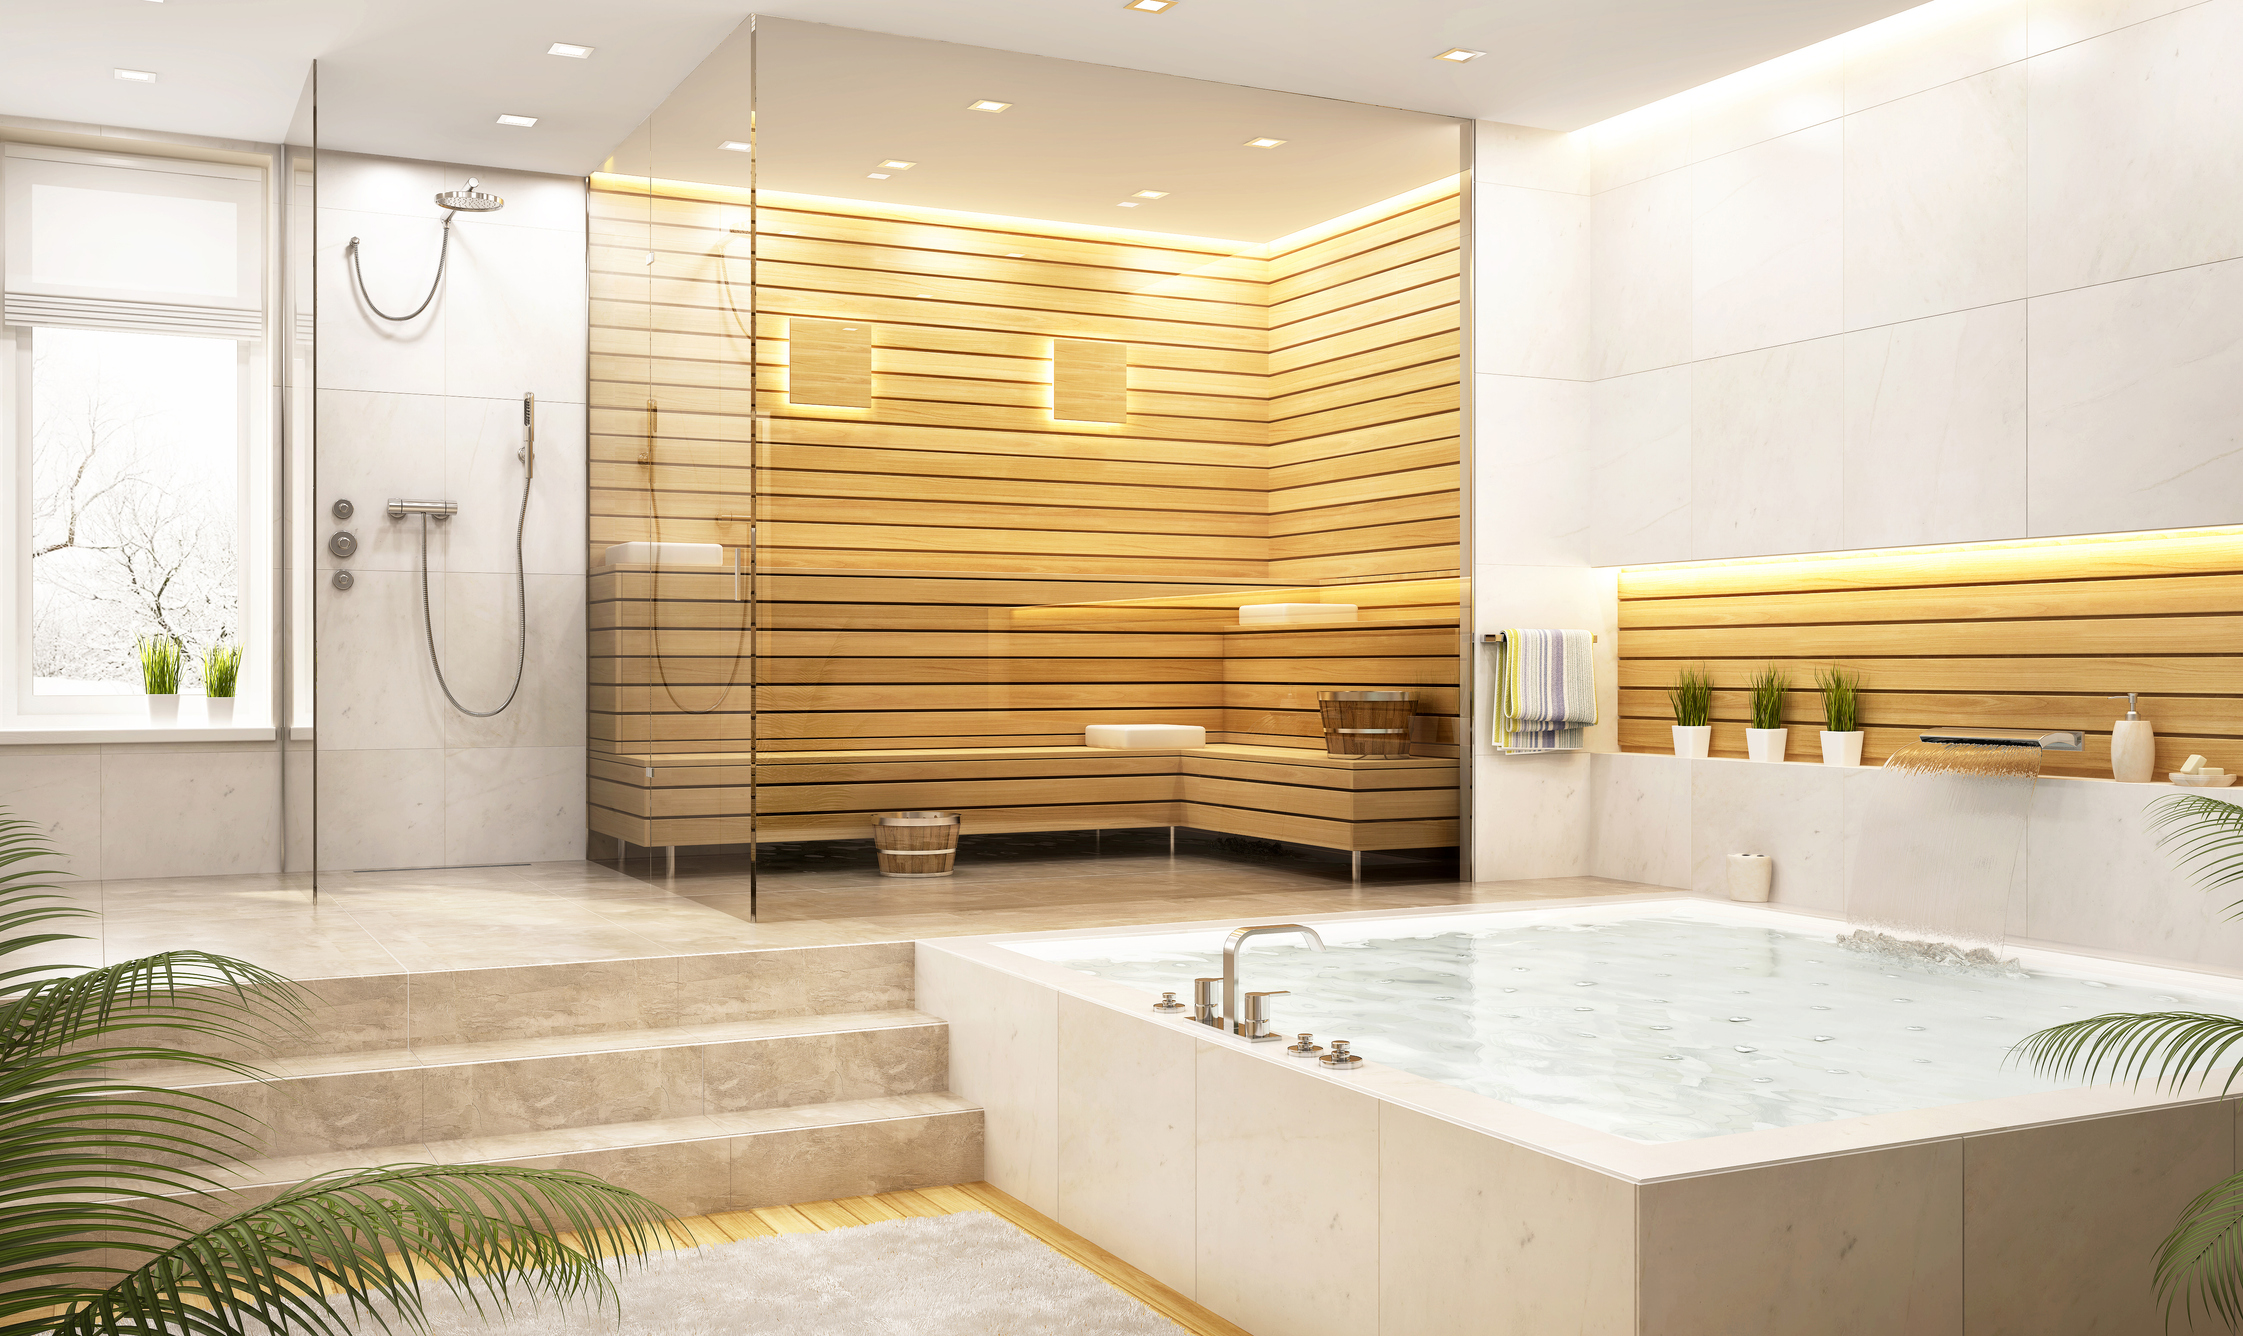 Get a Sneak Peek at Upcoming, Innovative Modern Bathroom Trends